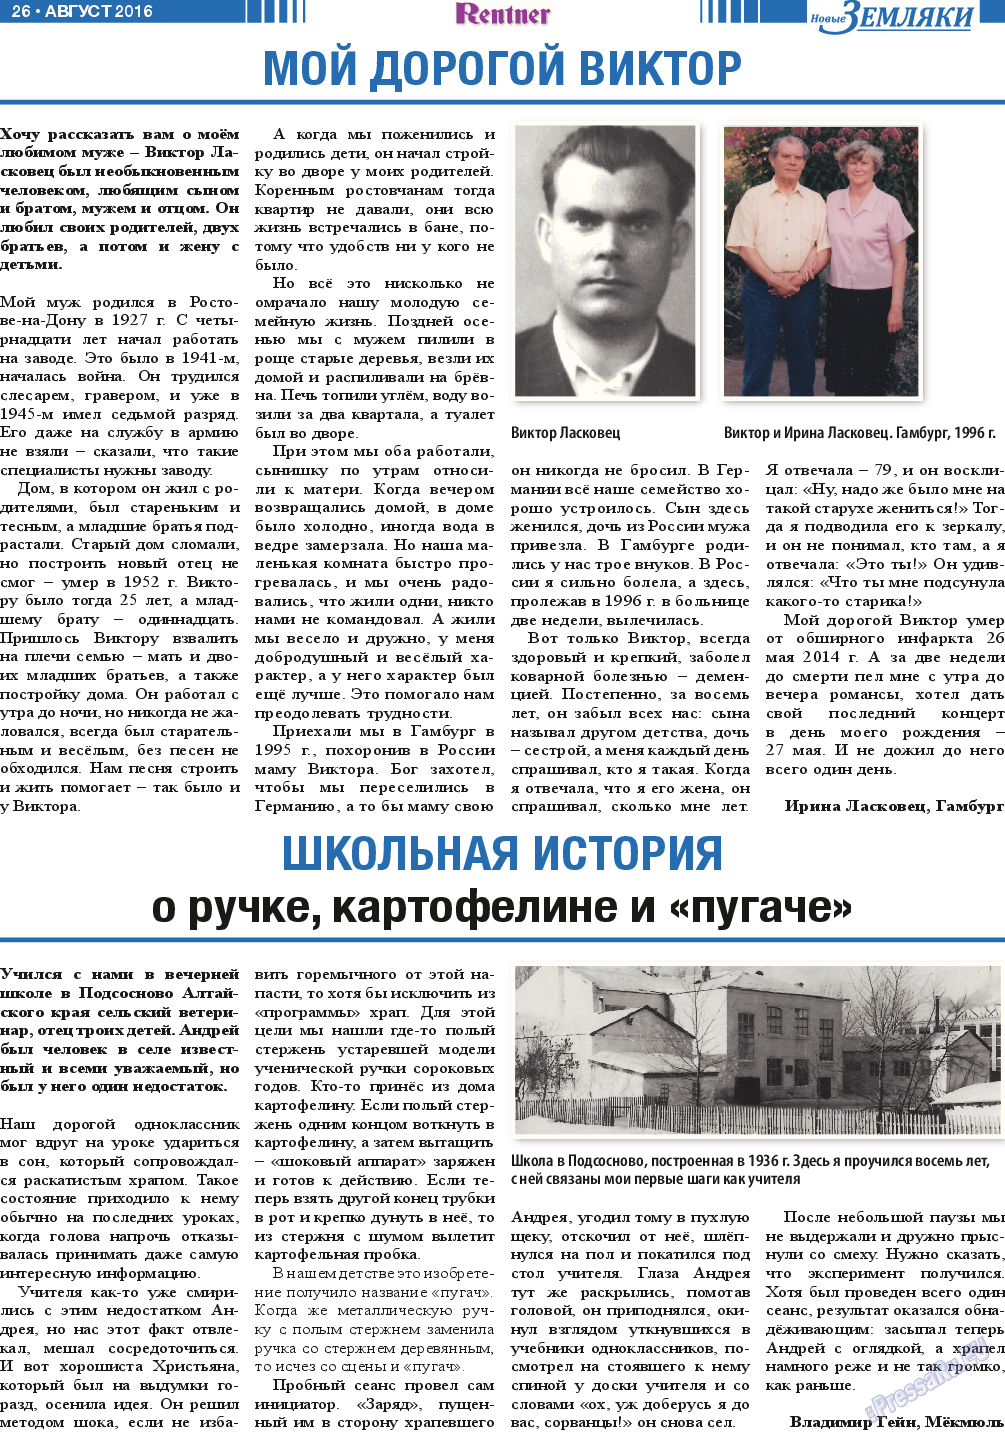 Новые Земляки, газета. 2016 №8 стр.26